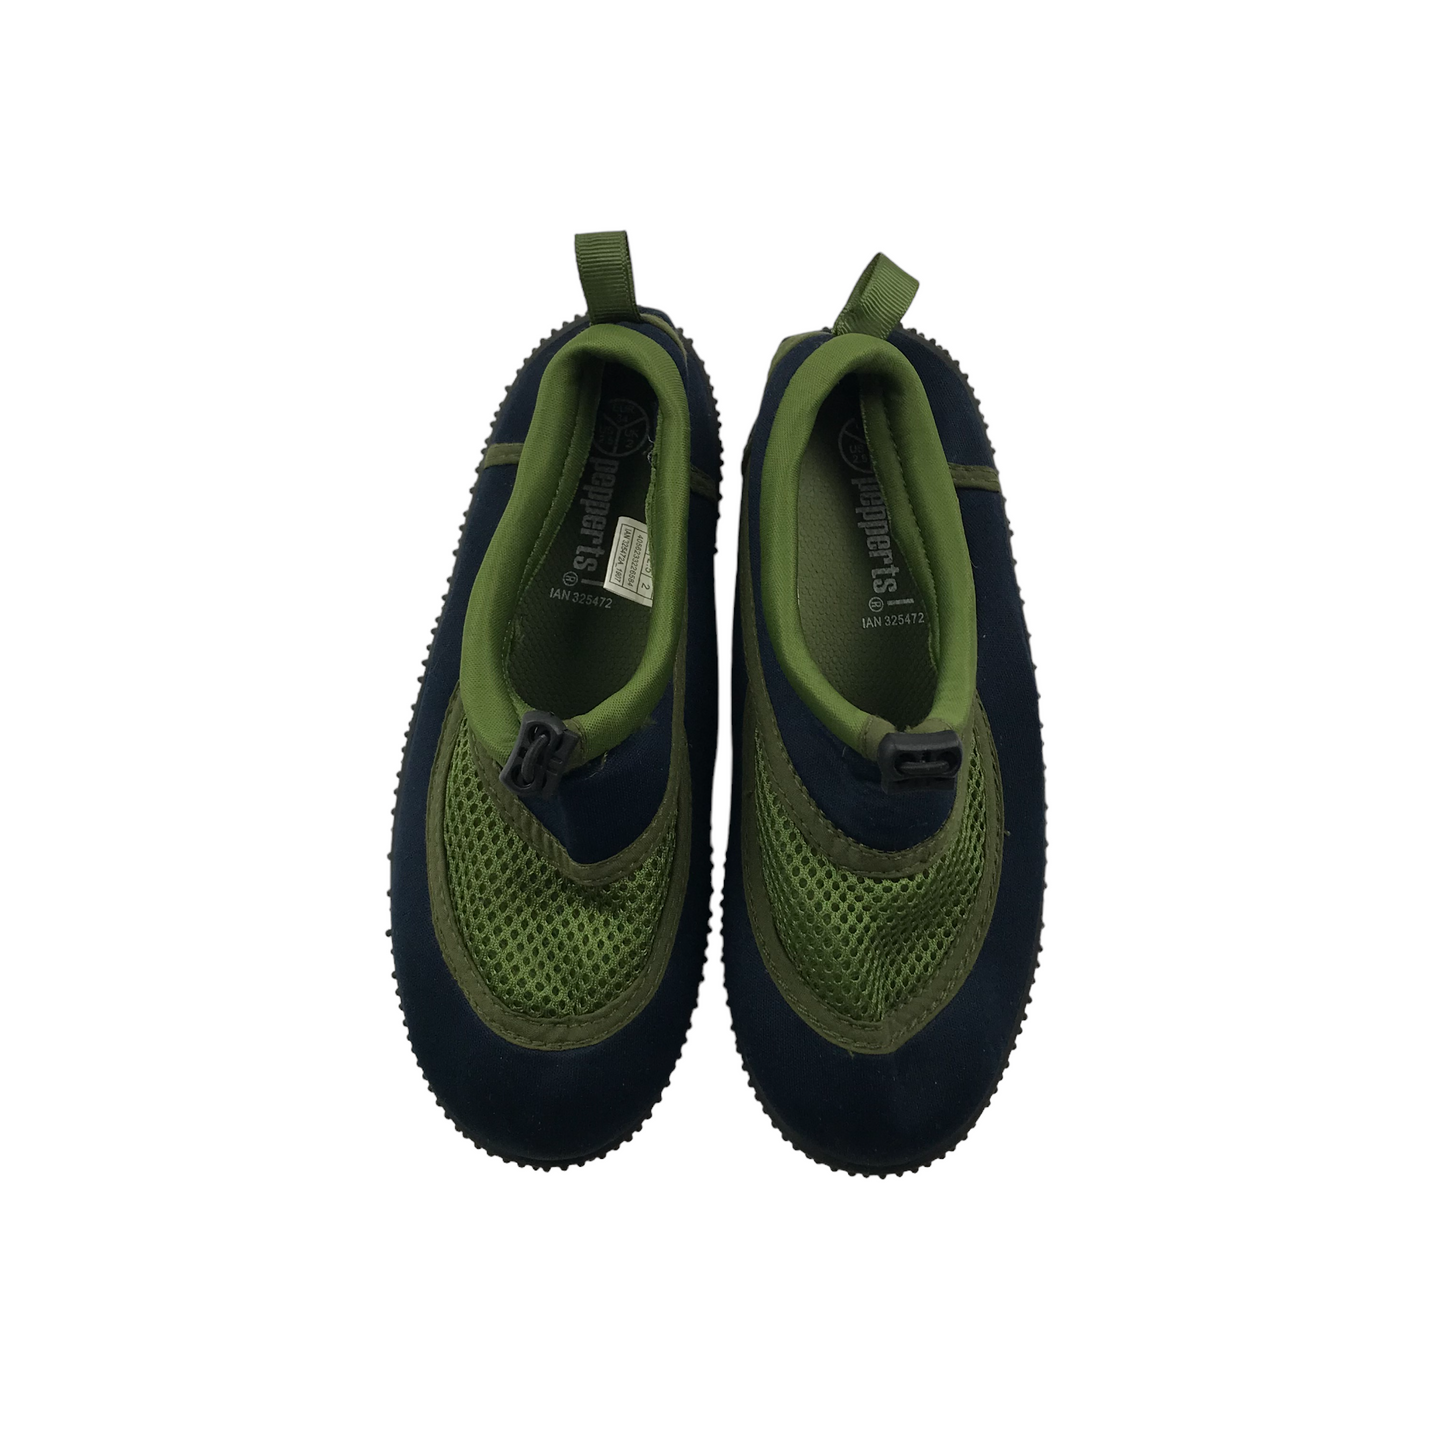 Pepperts Green Aqua Shoes Size 2